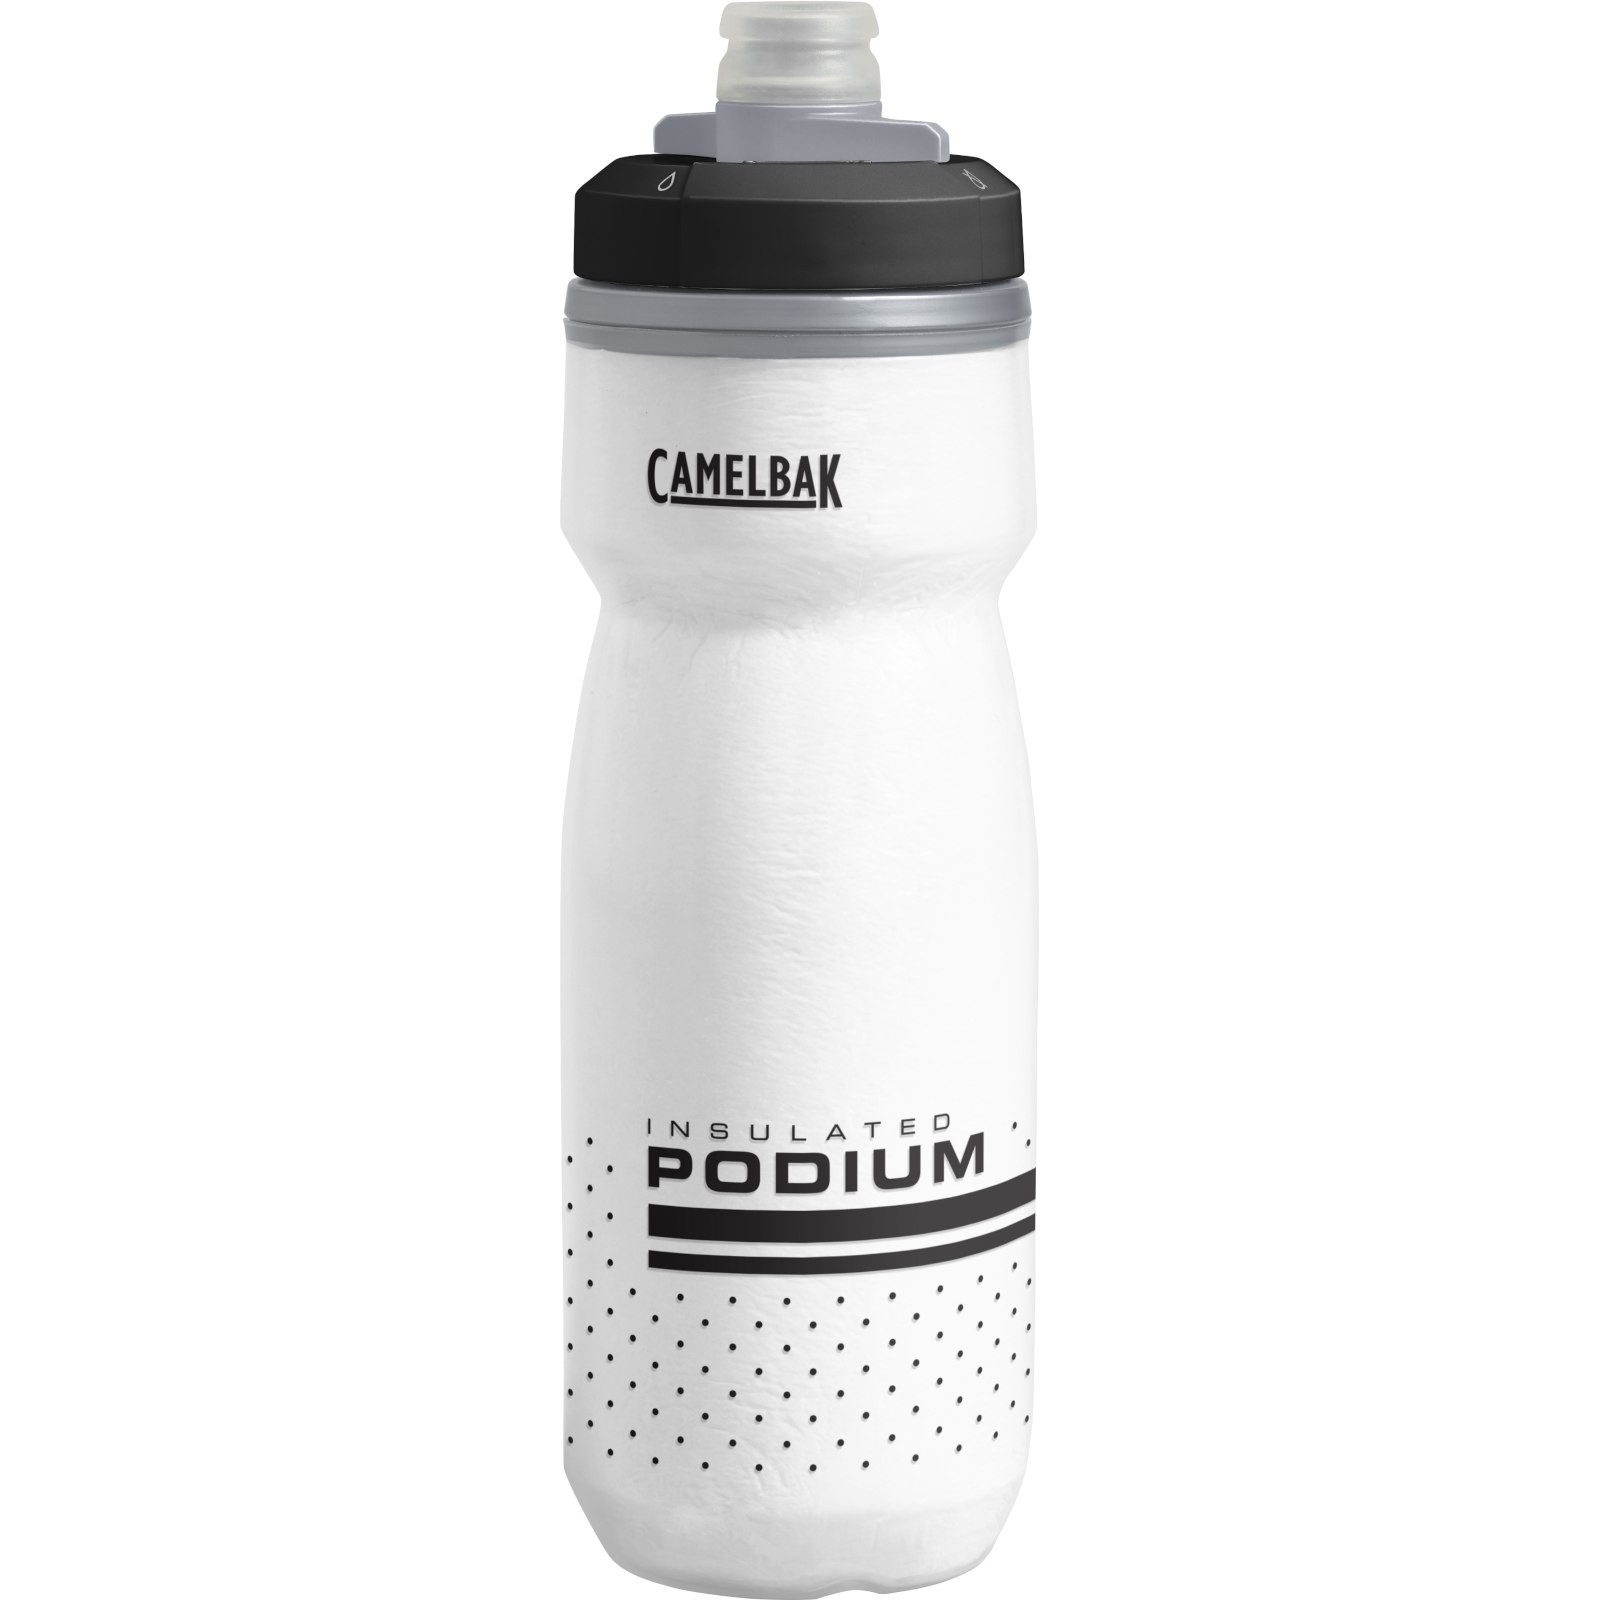 Produktbild von CamelBak Podium Chill Thermo-Trinkflasche 620ml - weiß/schwarz